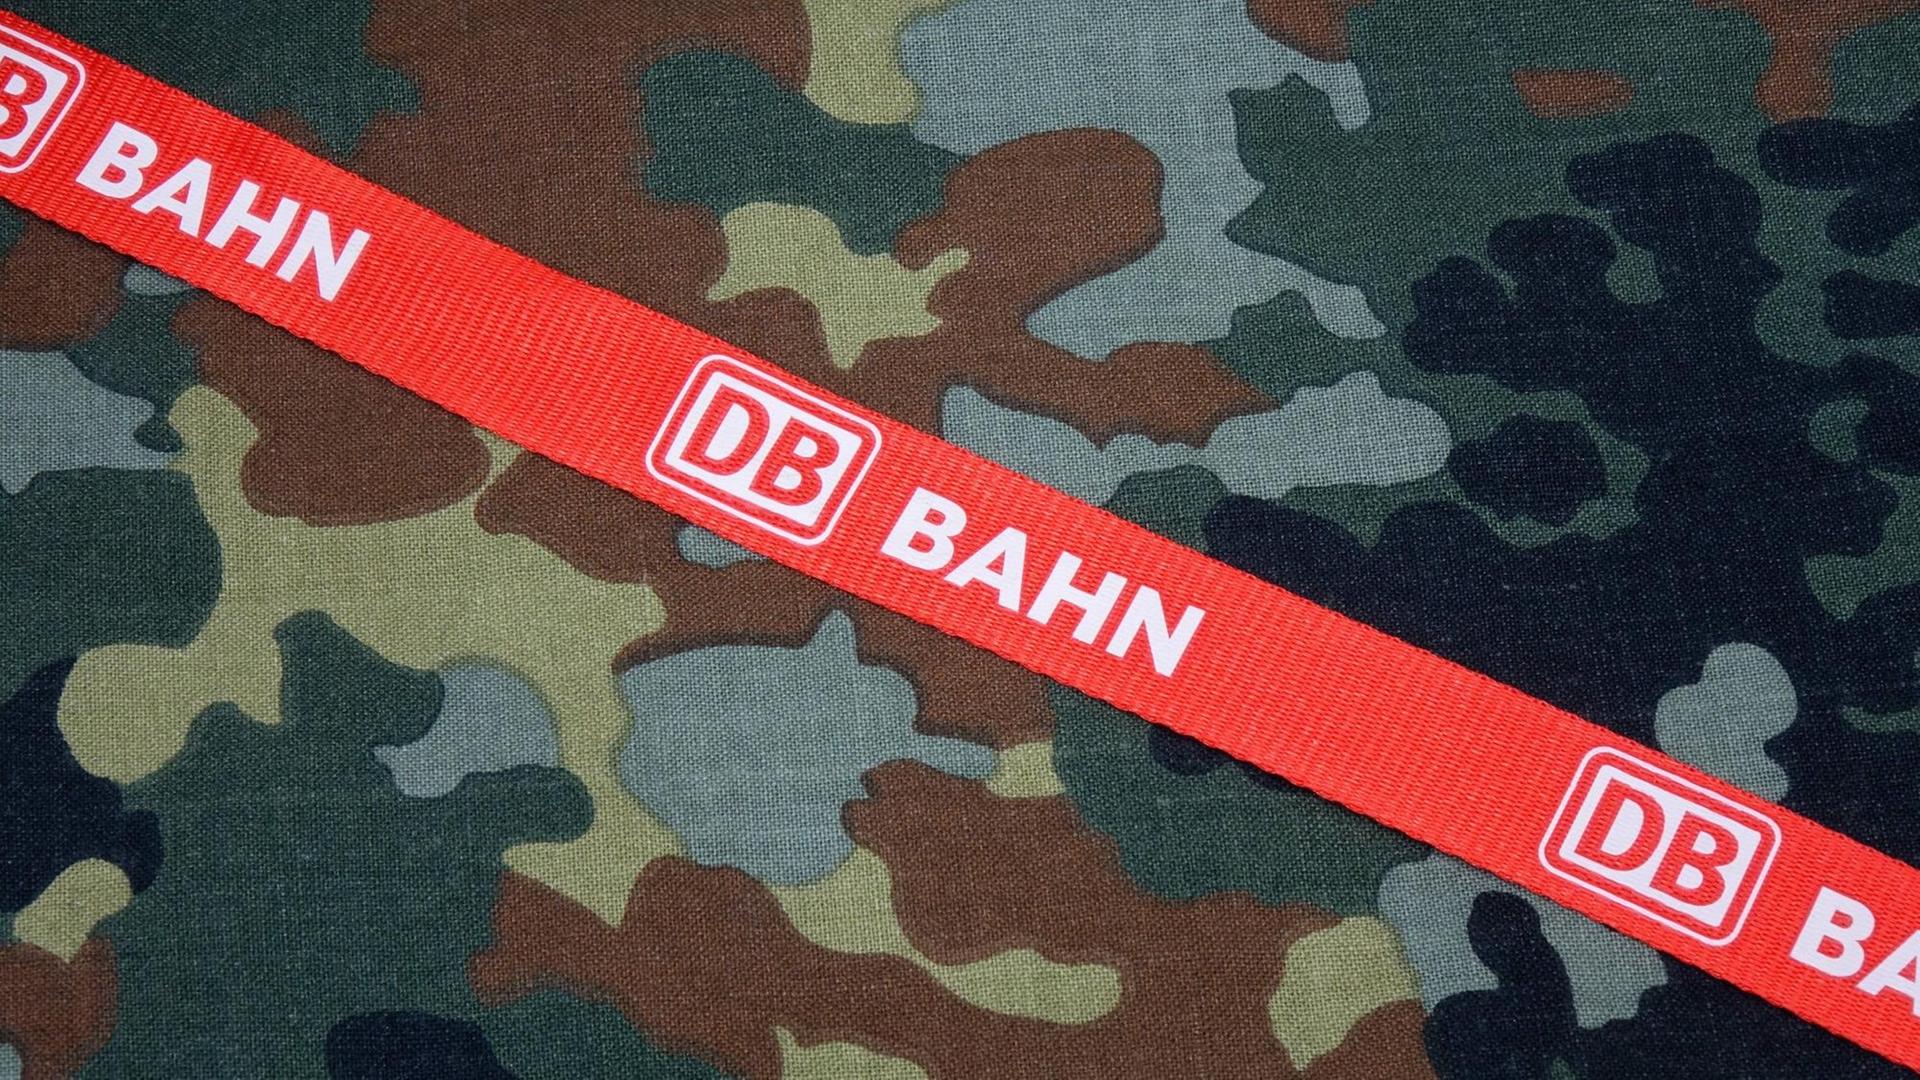 Auf einem Tarnstoff der Bundeswehr, liegt ein Band der Deutschen Bahn mit Logo "DB" und dem Wort "Bahn".